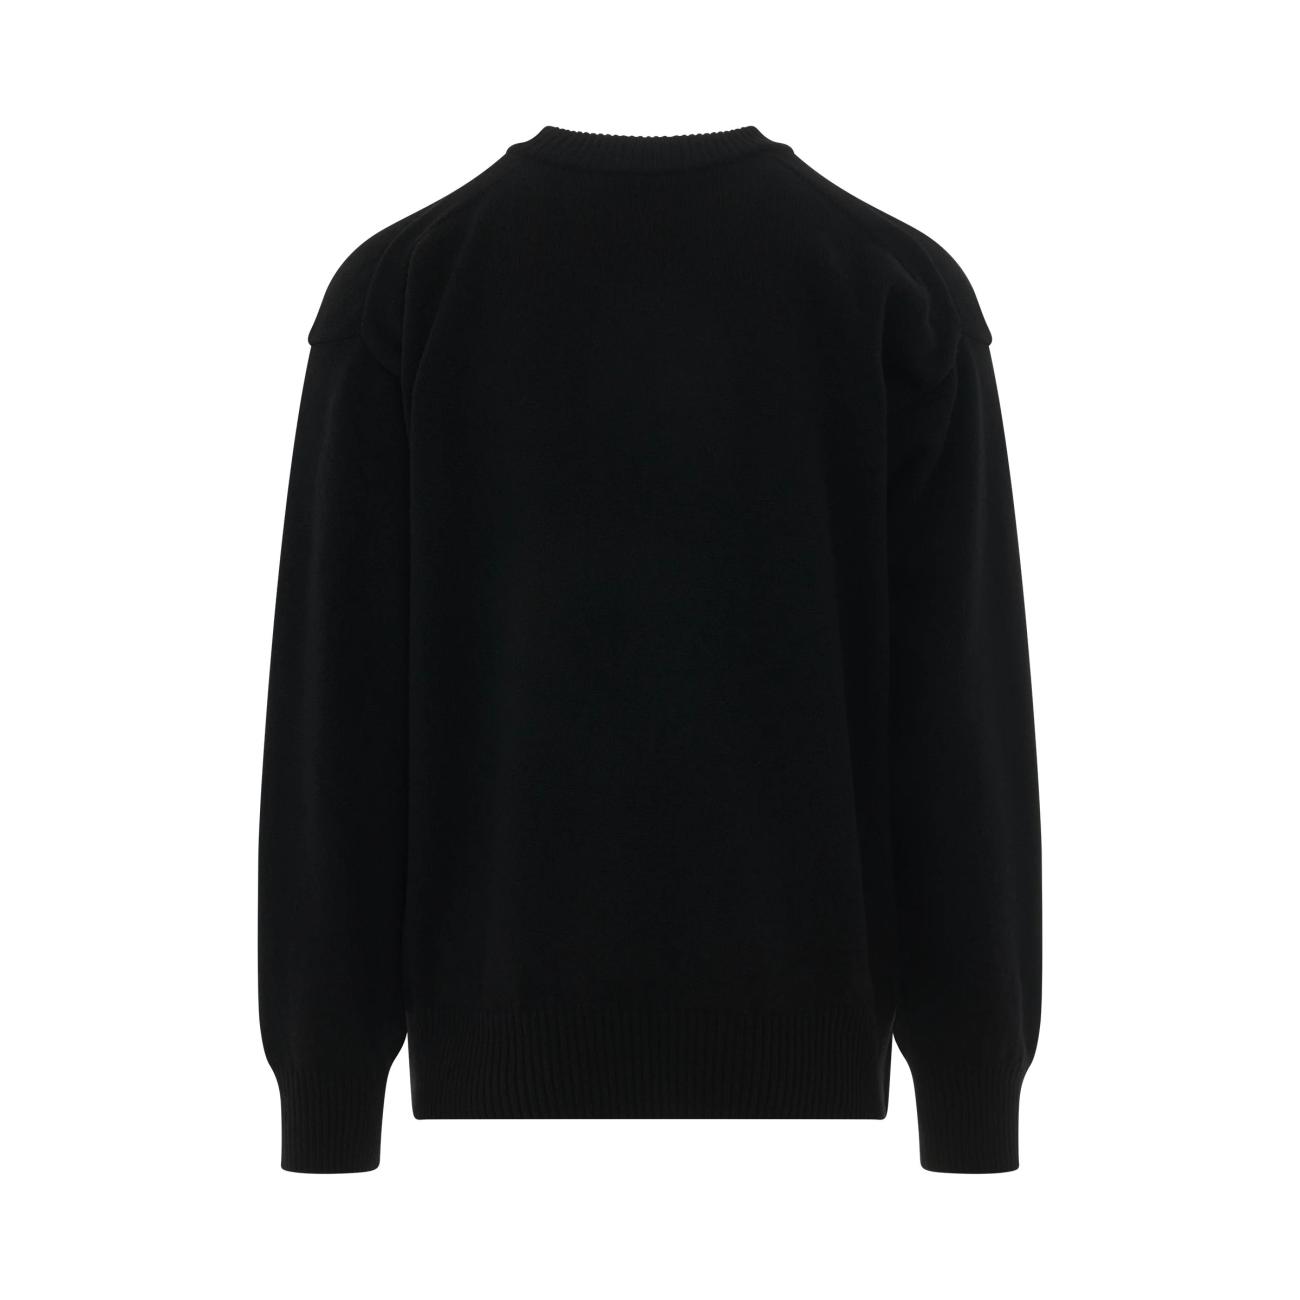 MADSAKI Knit Pullover - Black